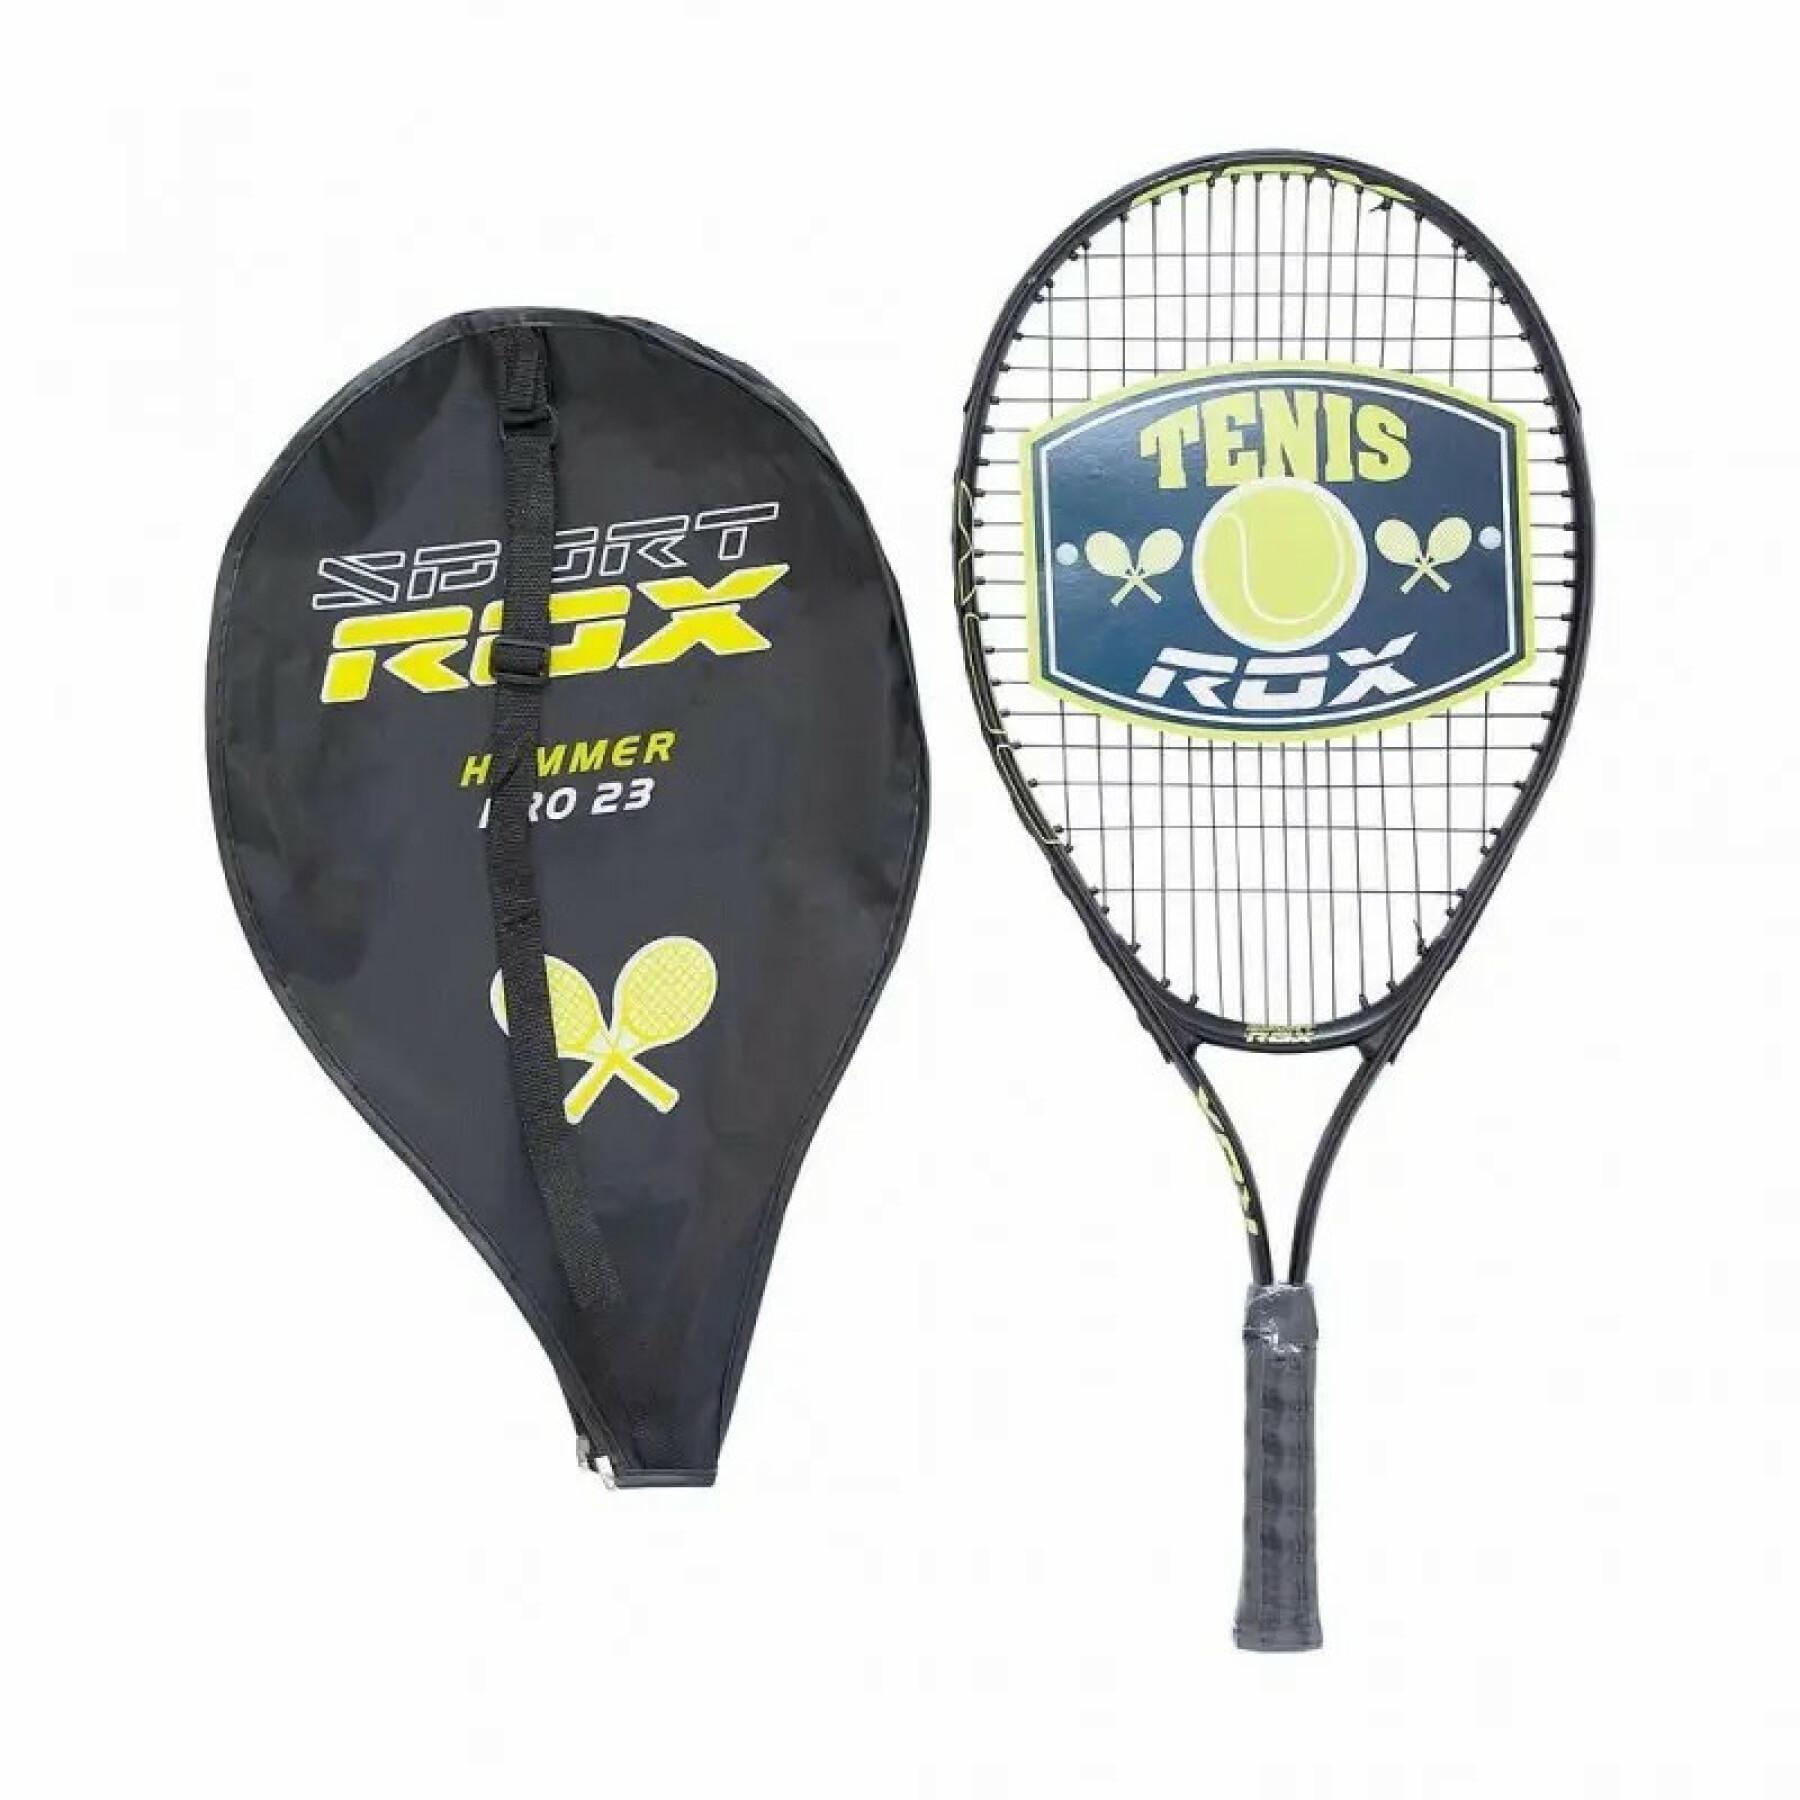 Raquete de ténis Softee Rox Hammer Pro 23